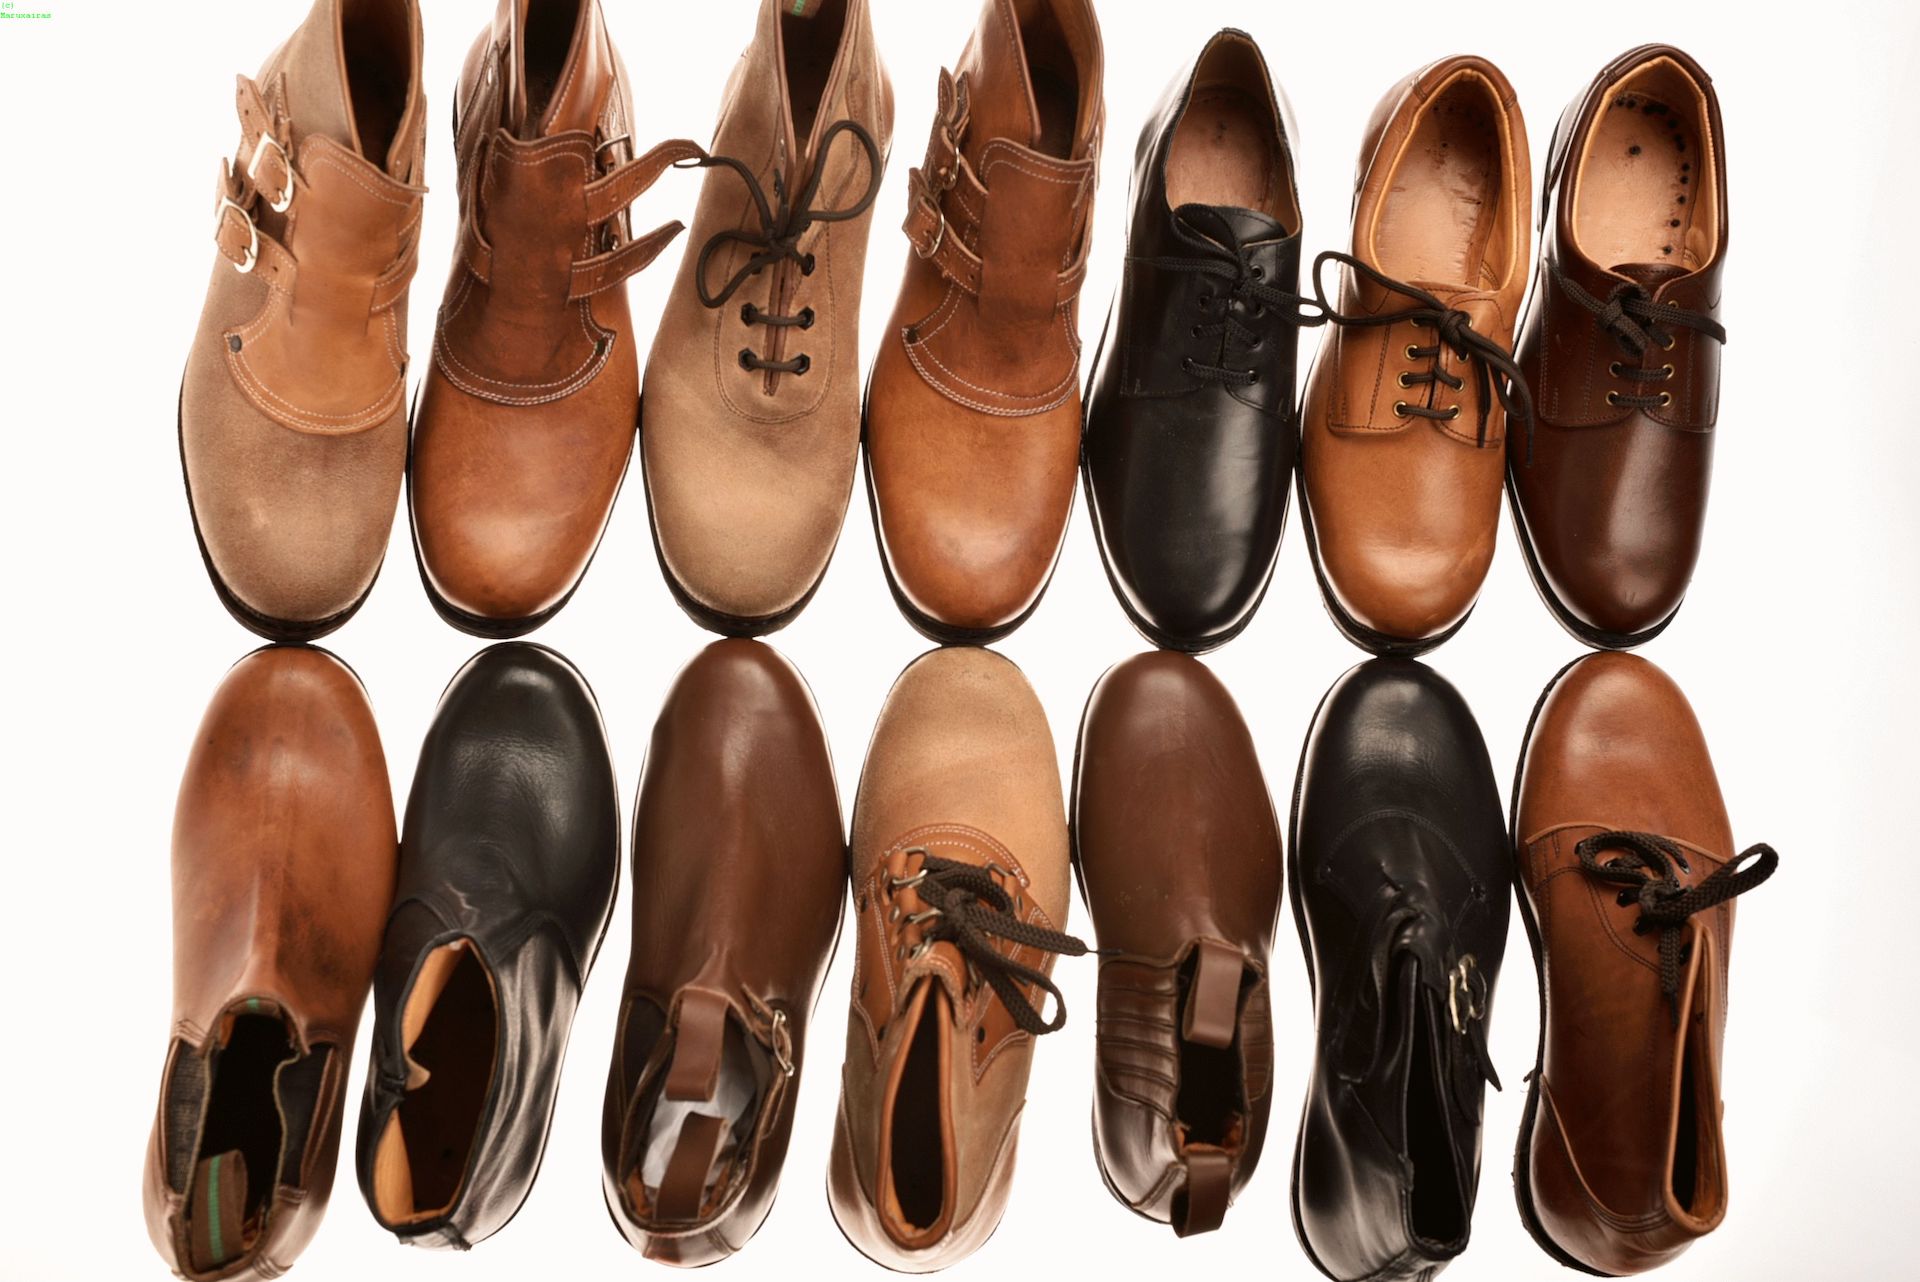 Calzados Meire - Modelos botas y zapatos